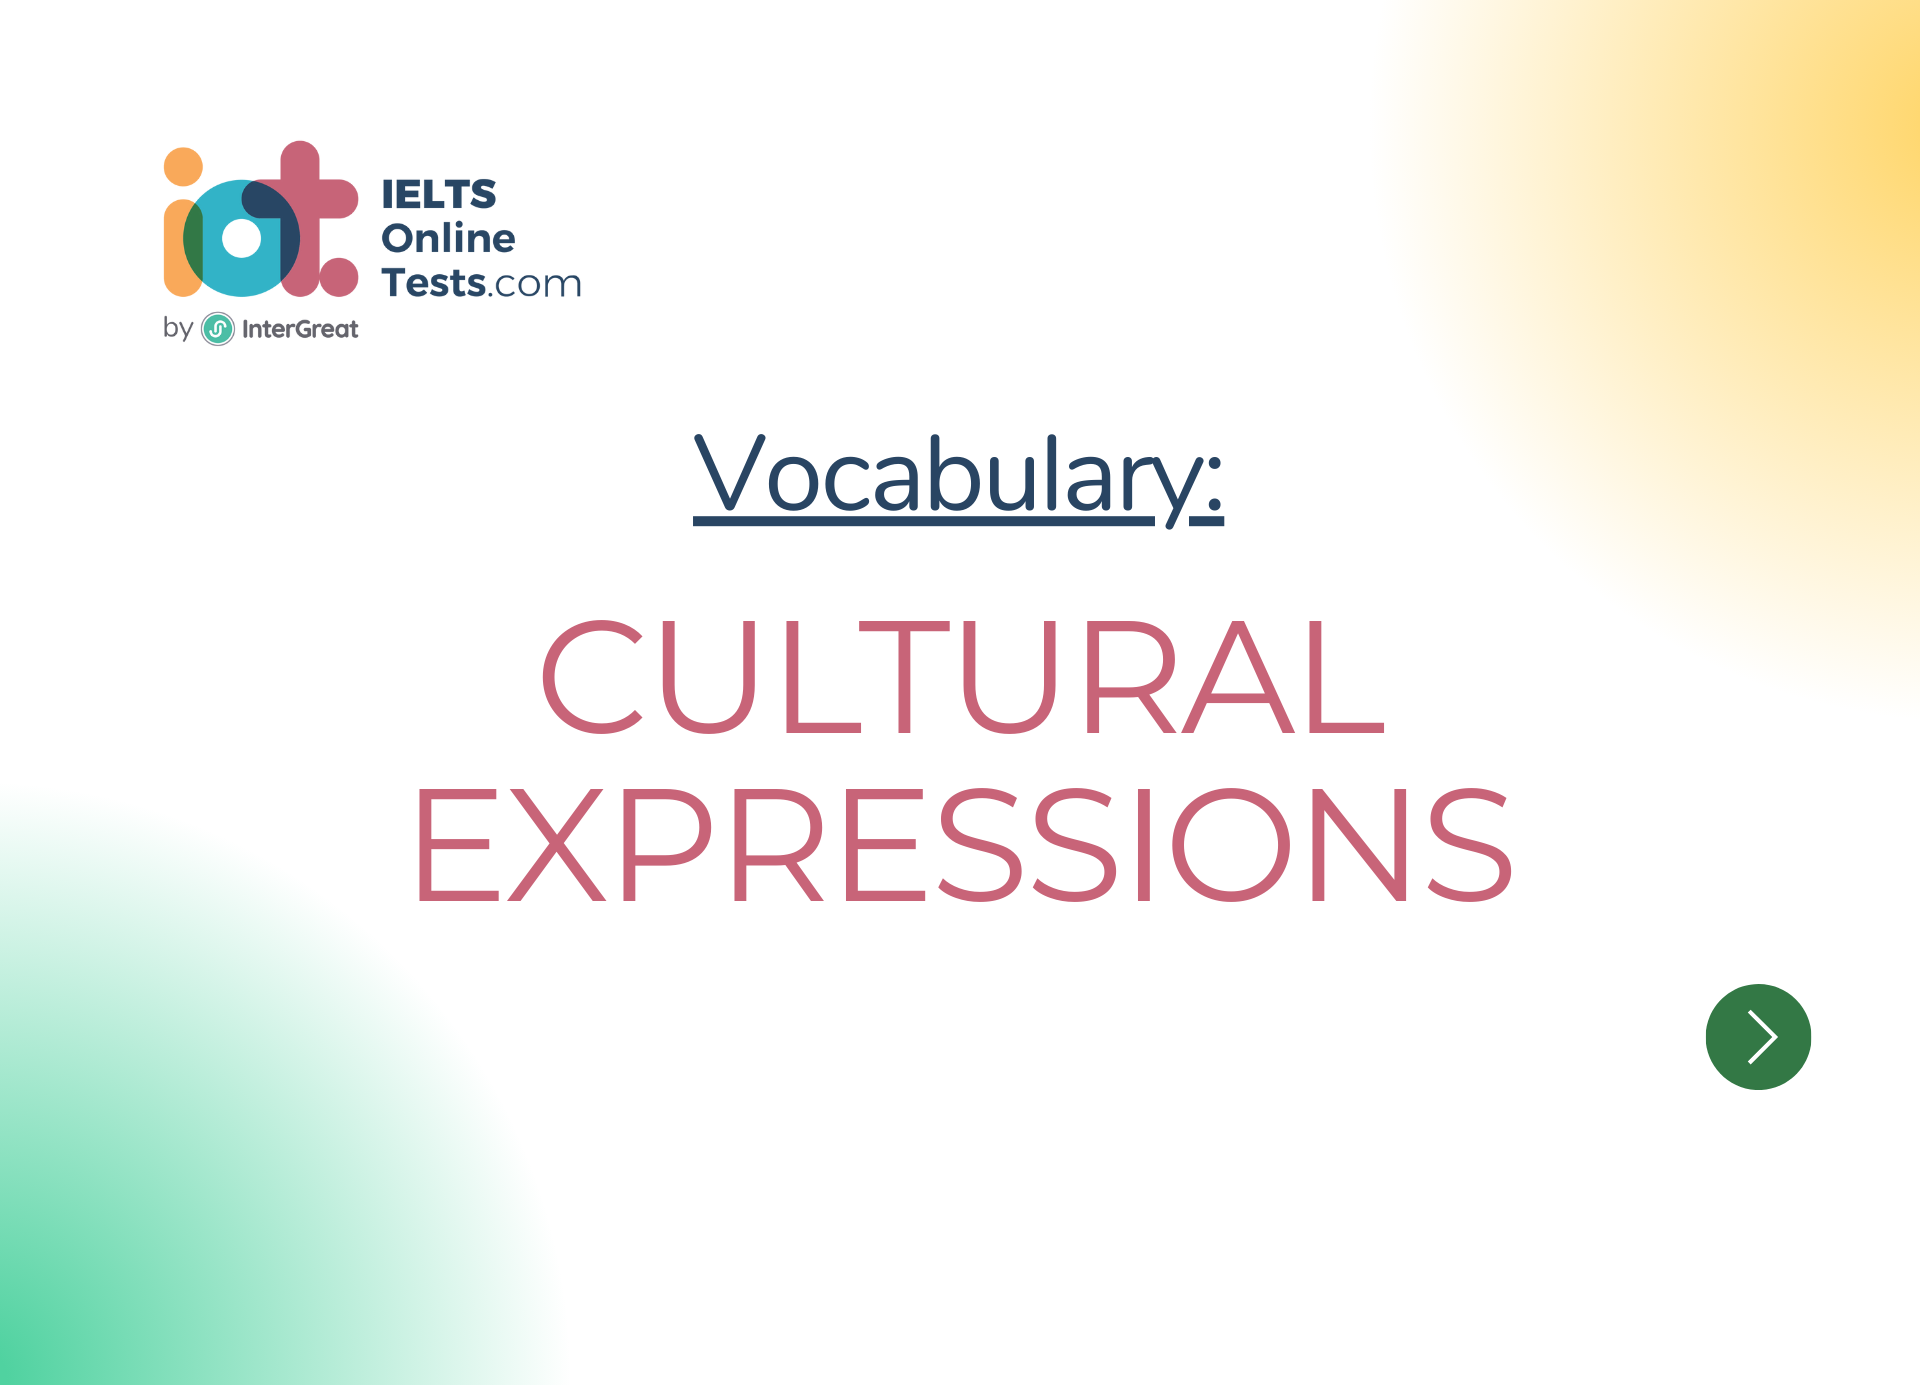 Cultural expressions